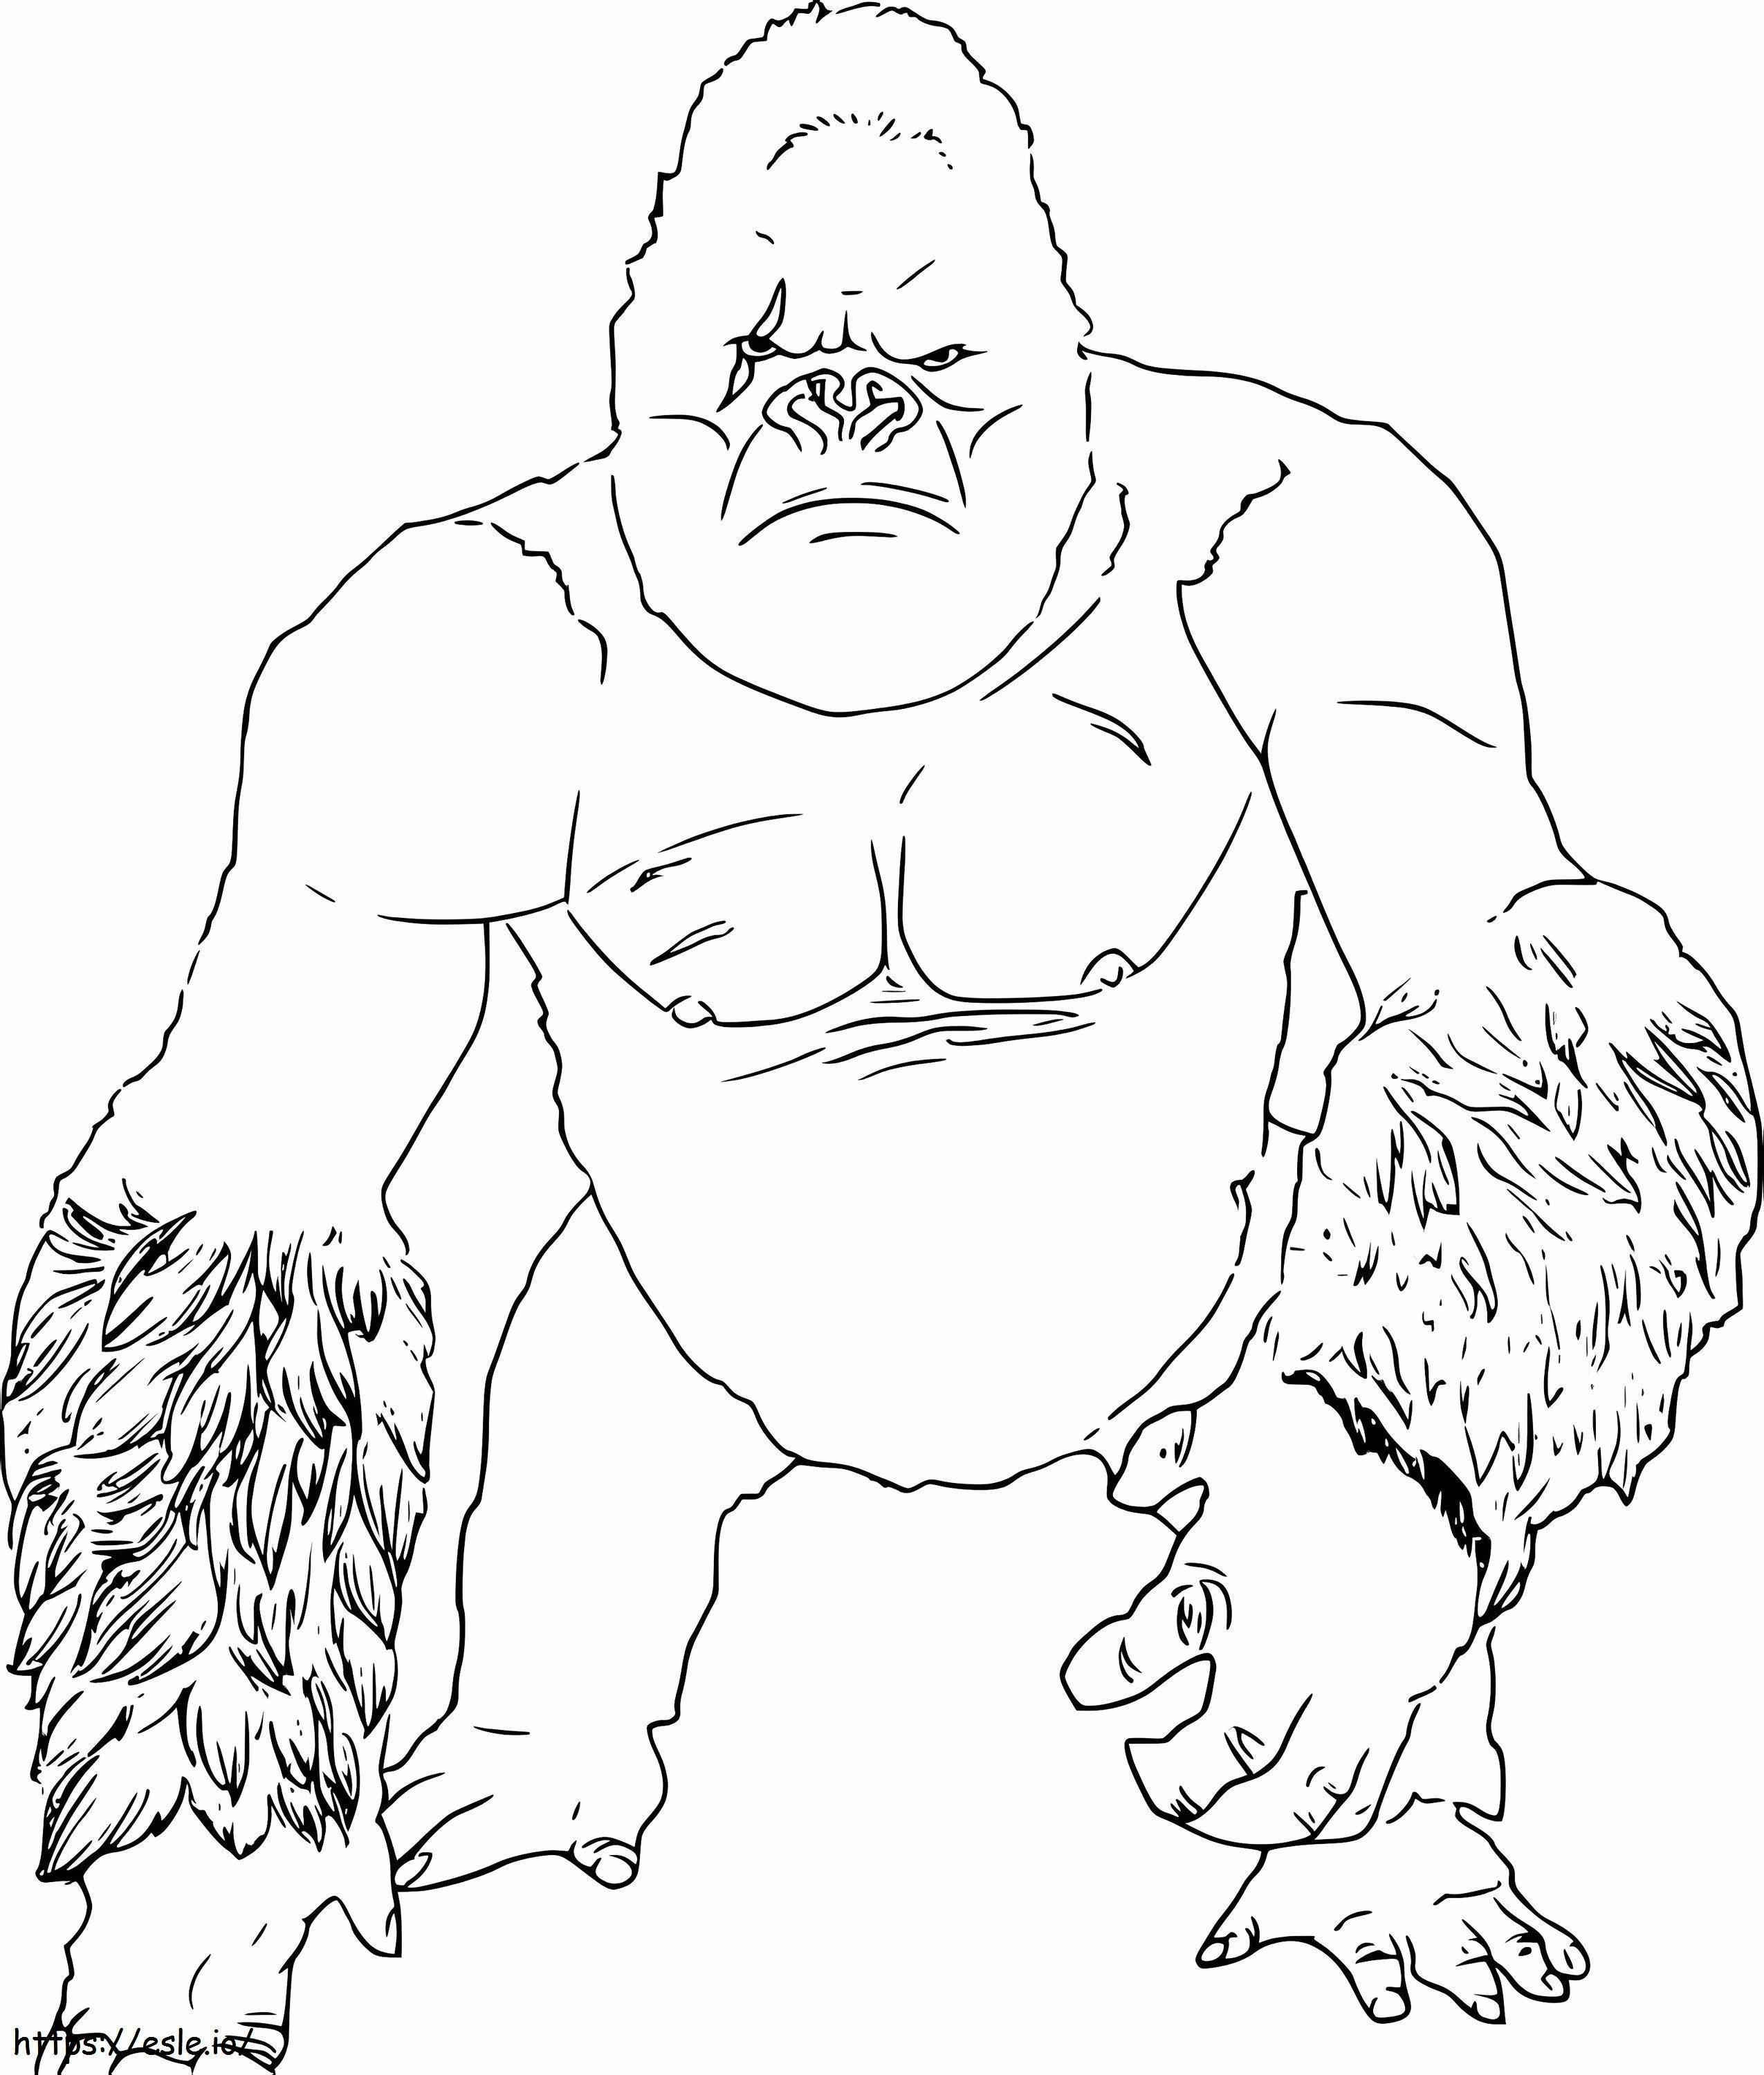 Kong coloring page